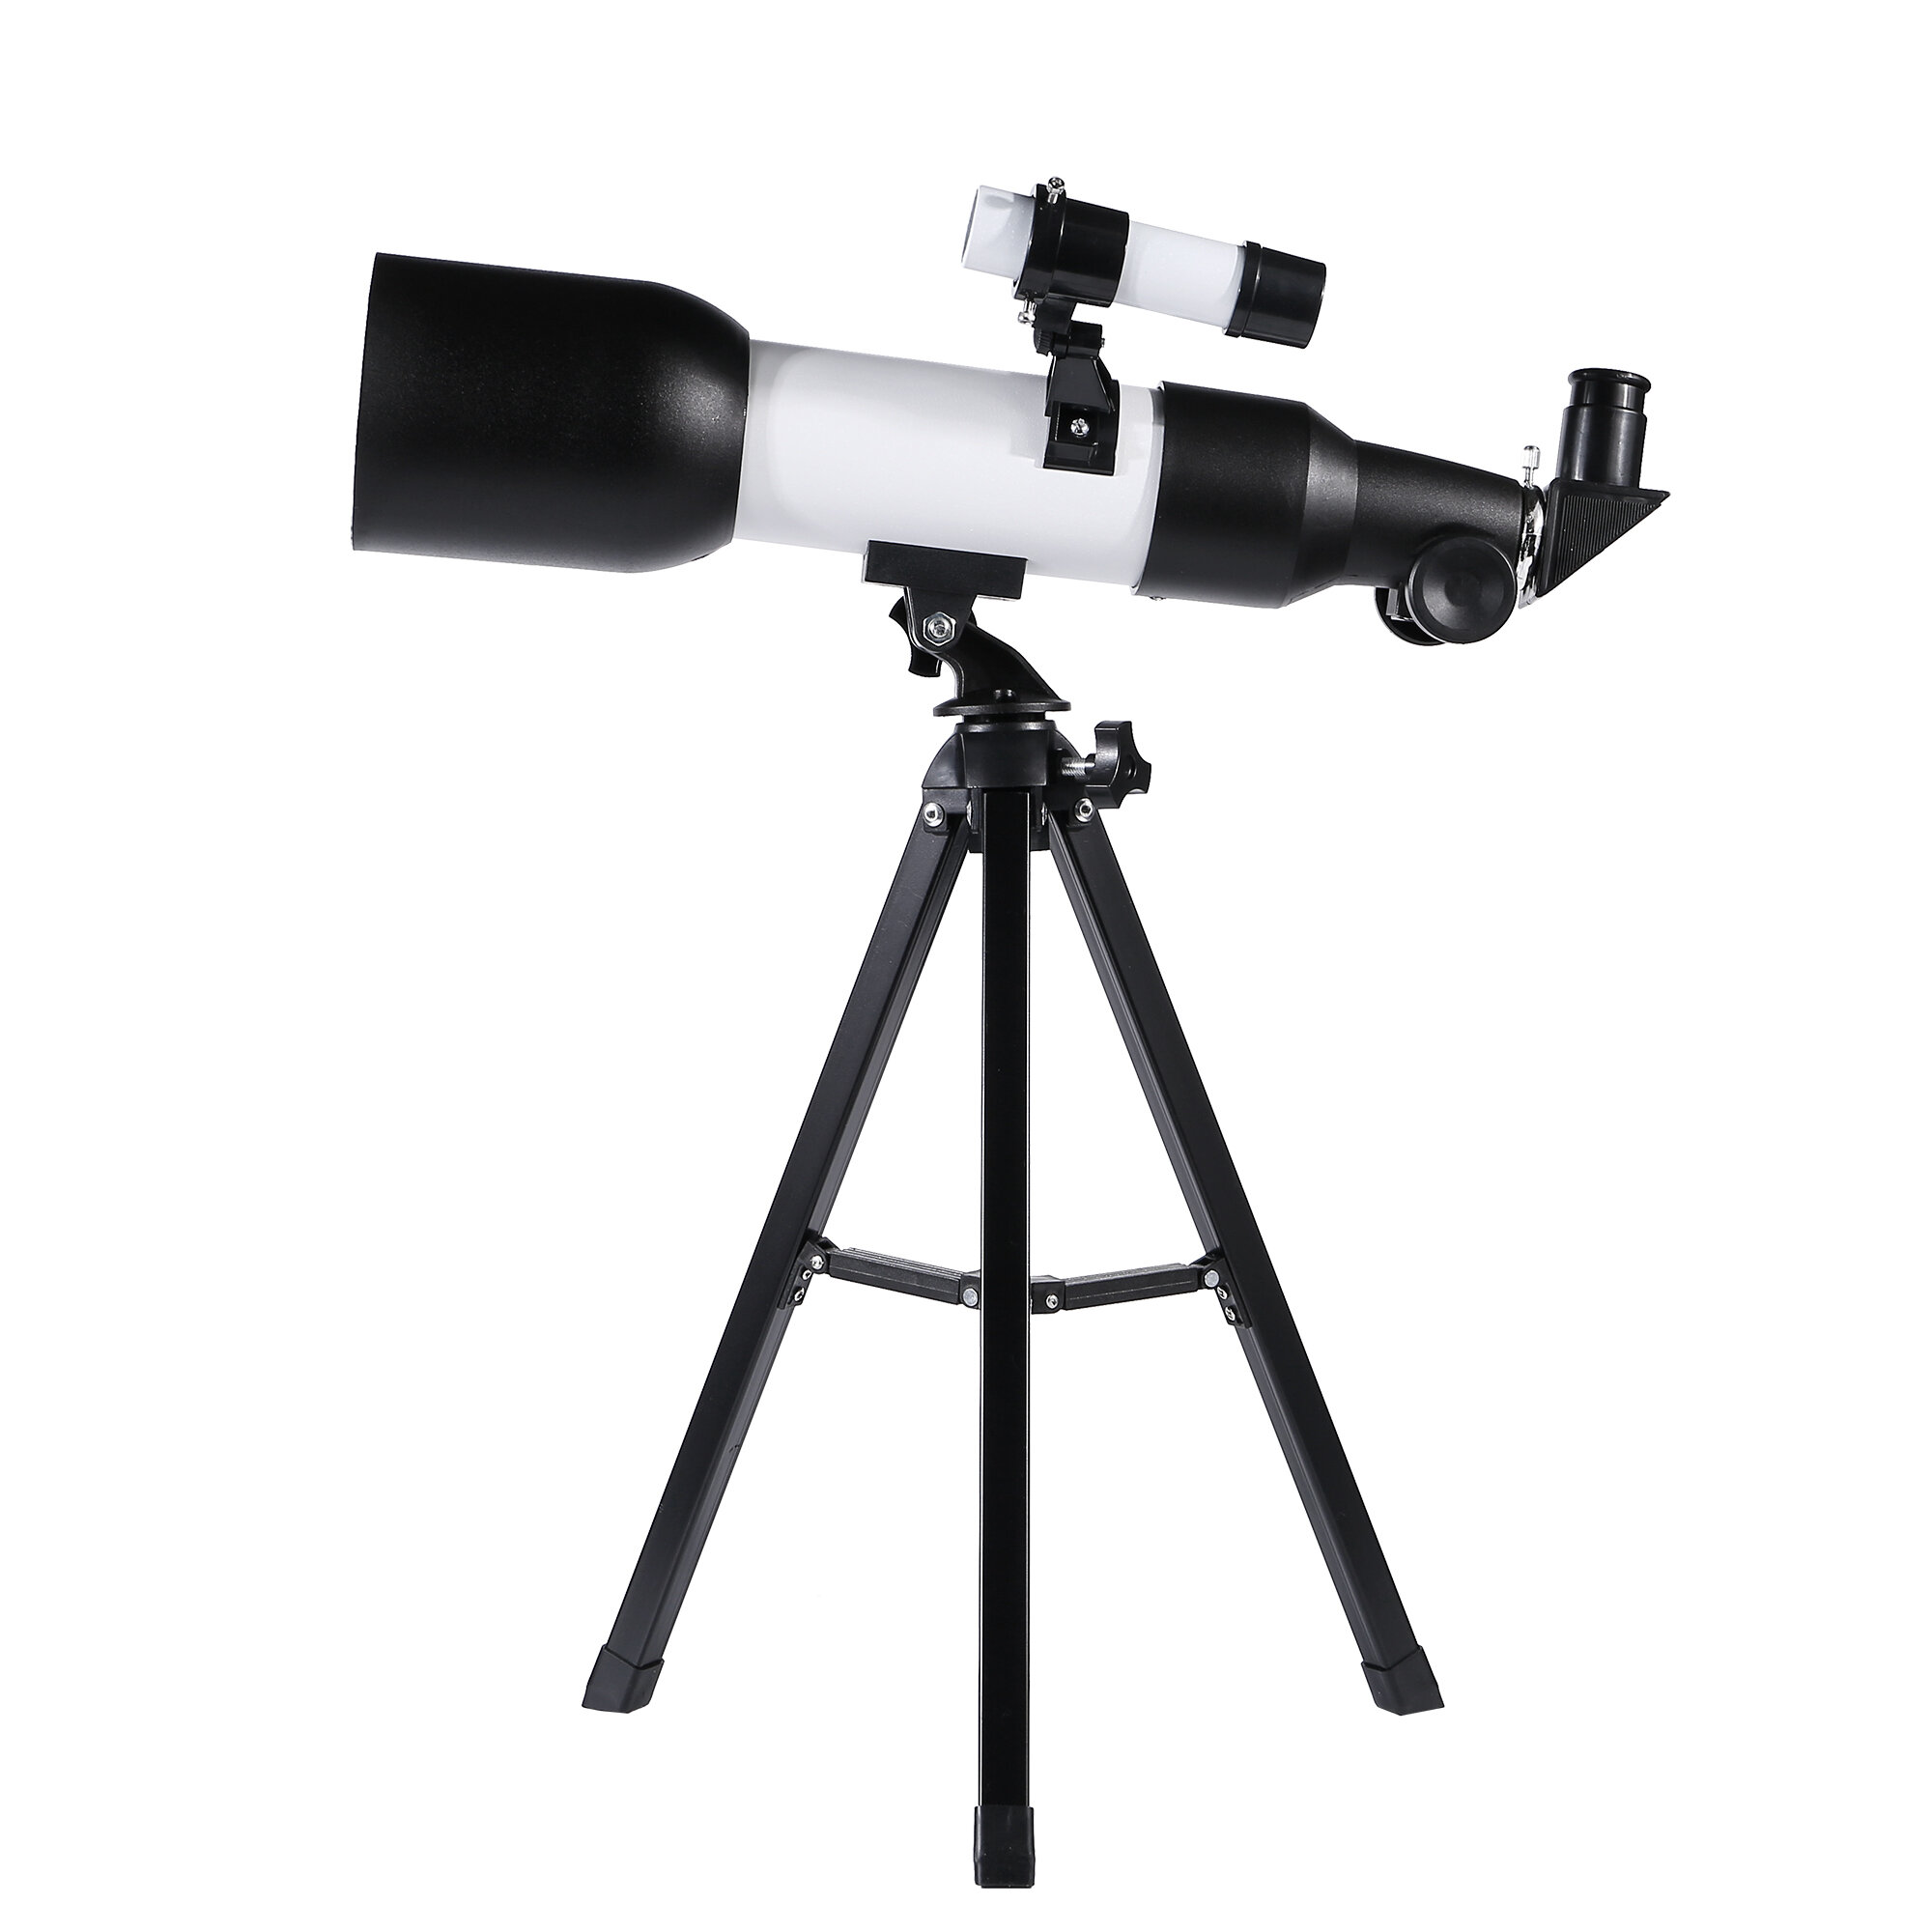 Επαγγελματικό τηλεσκόπιο HD αστρονομίας Eyebre 120x για παιδιά με νυχτερινή όραση χαμηλής φωτεινότητας και τρίποδο για παρατήρηση του βαθέος διαστήματος.